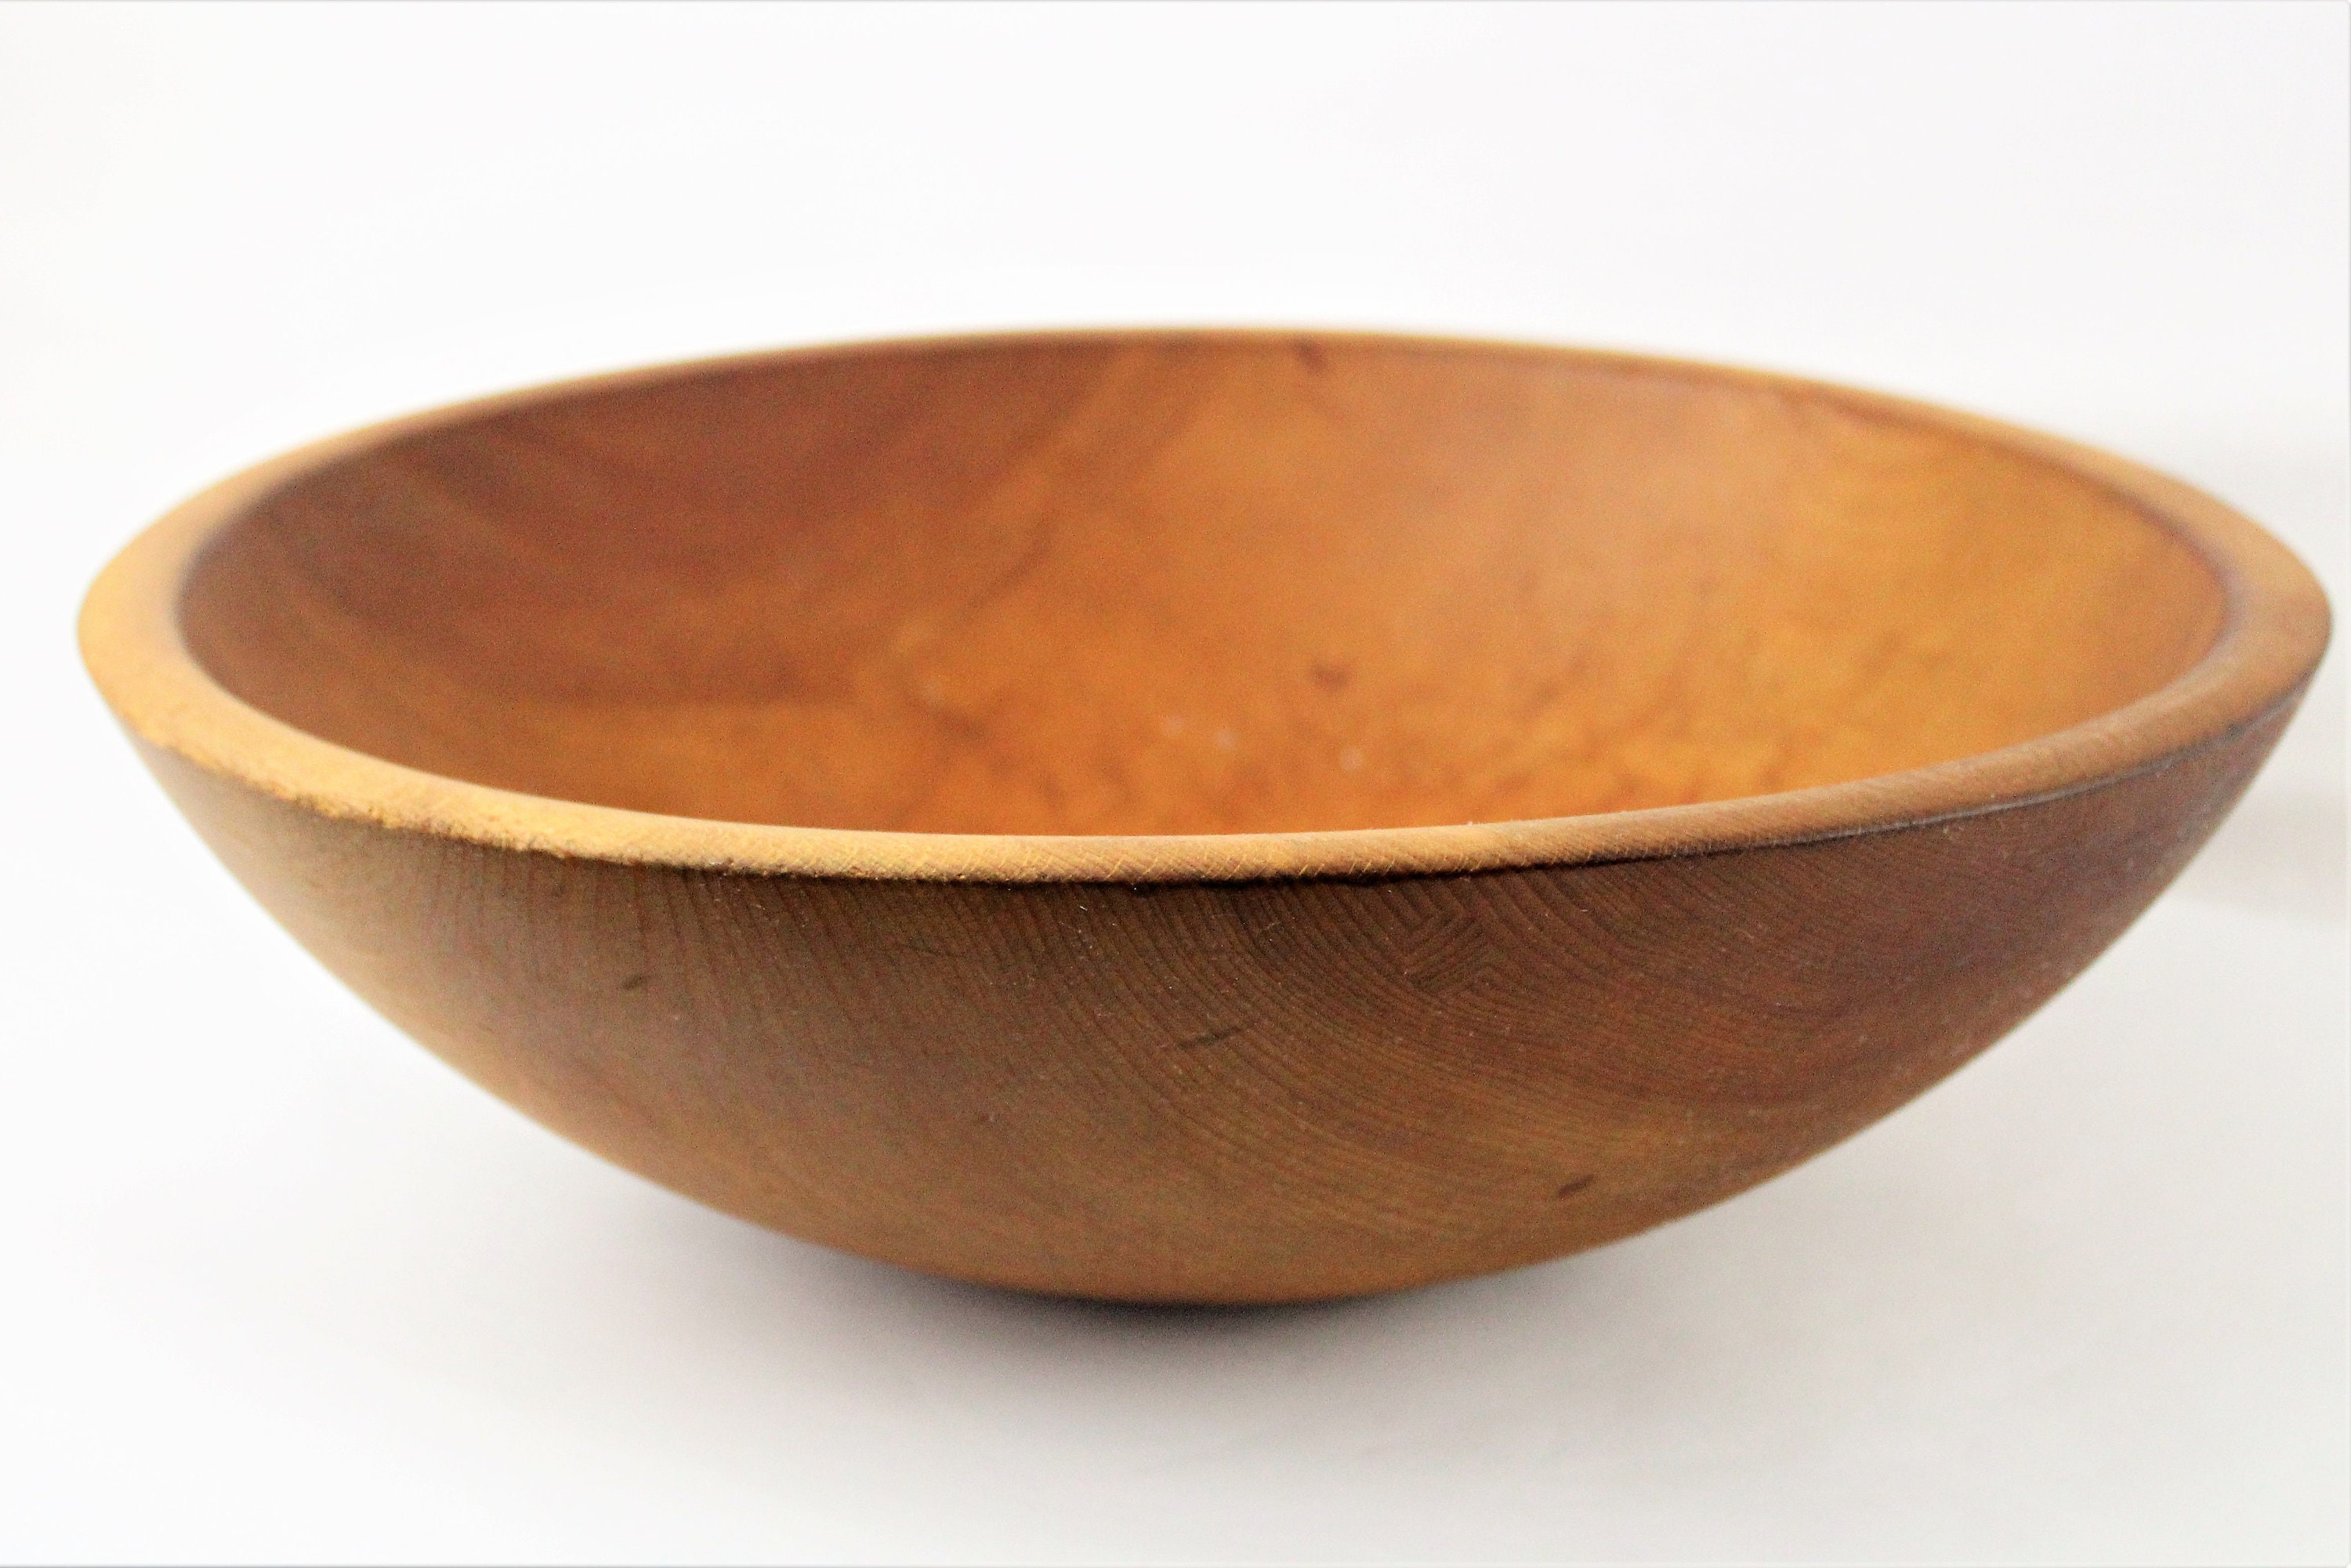 Munising wooden bowl